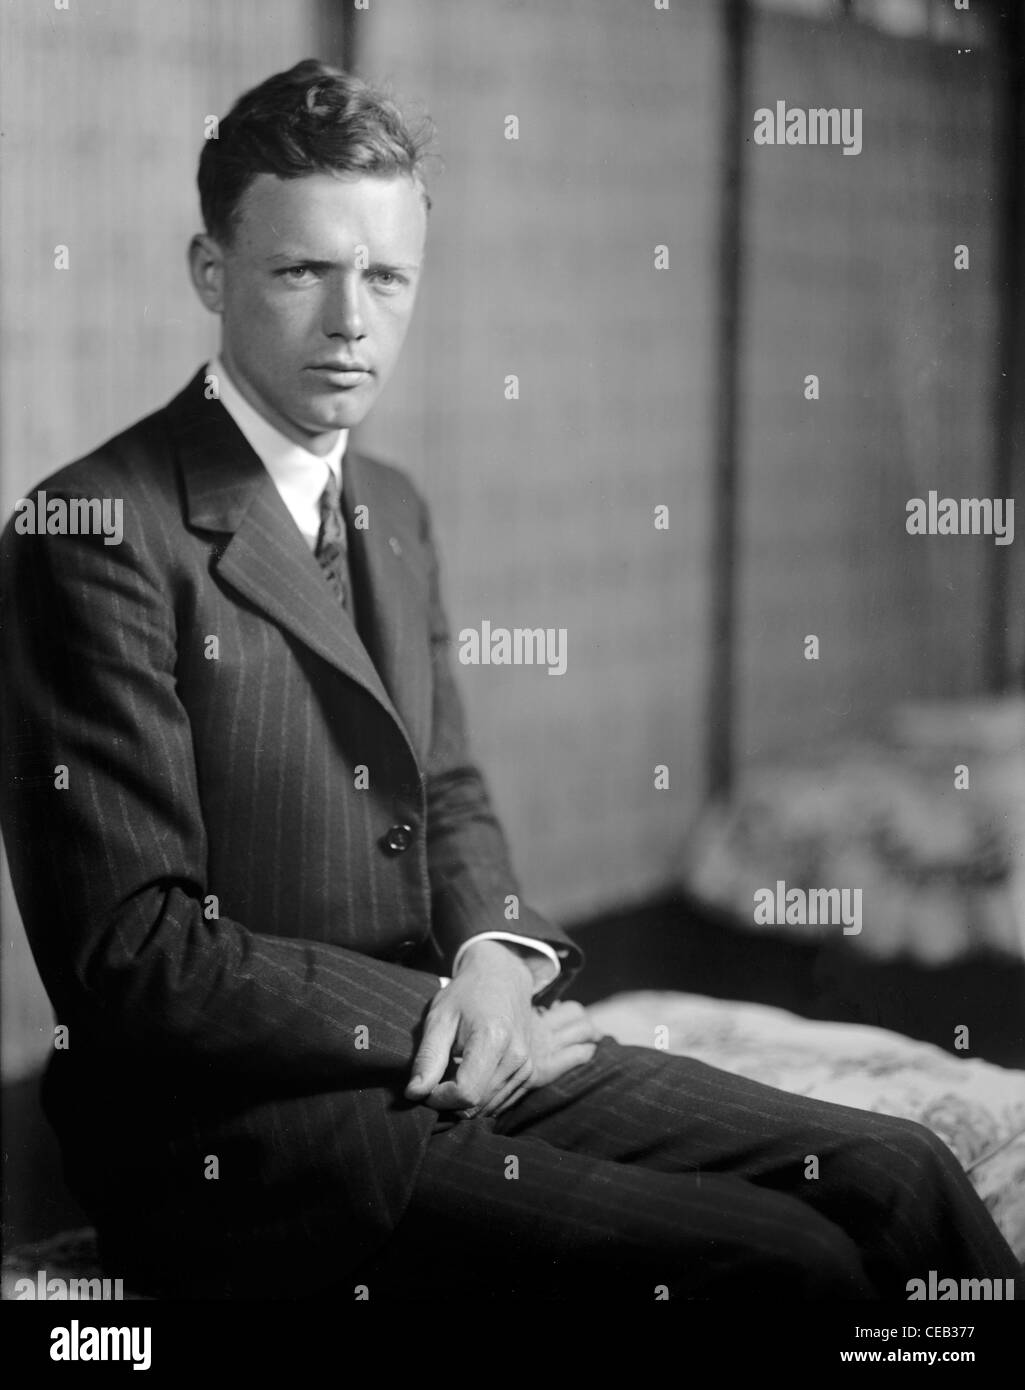 Charles Augustus Lindbergh était un aviateur américain, auteur, inventeur, explorateur, et un activiste social. Banque D'Images